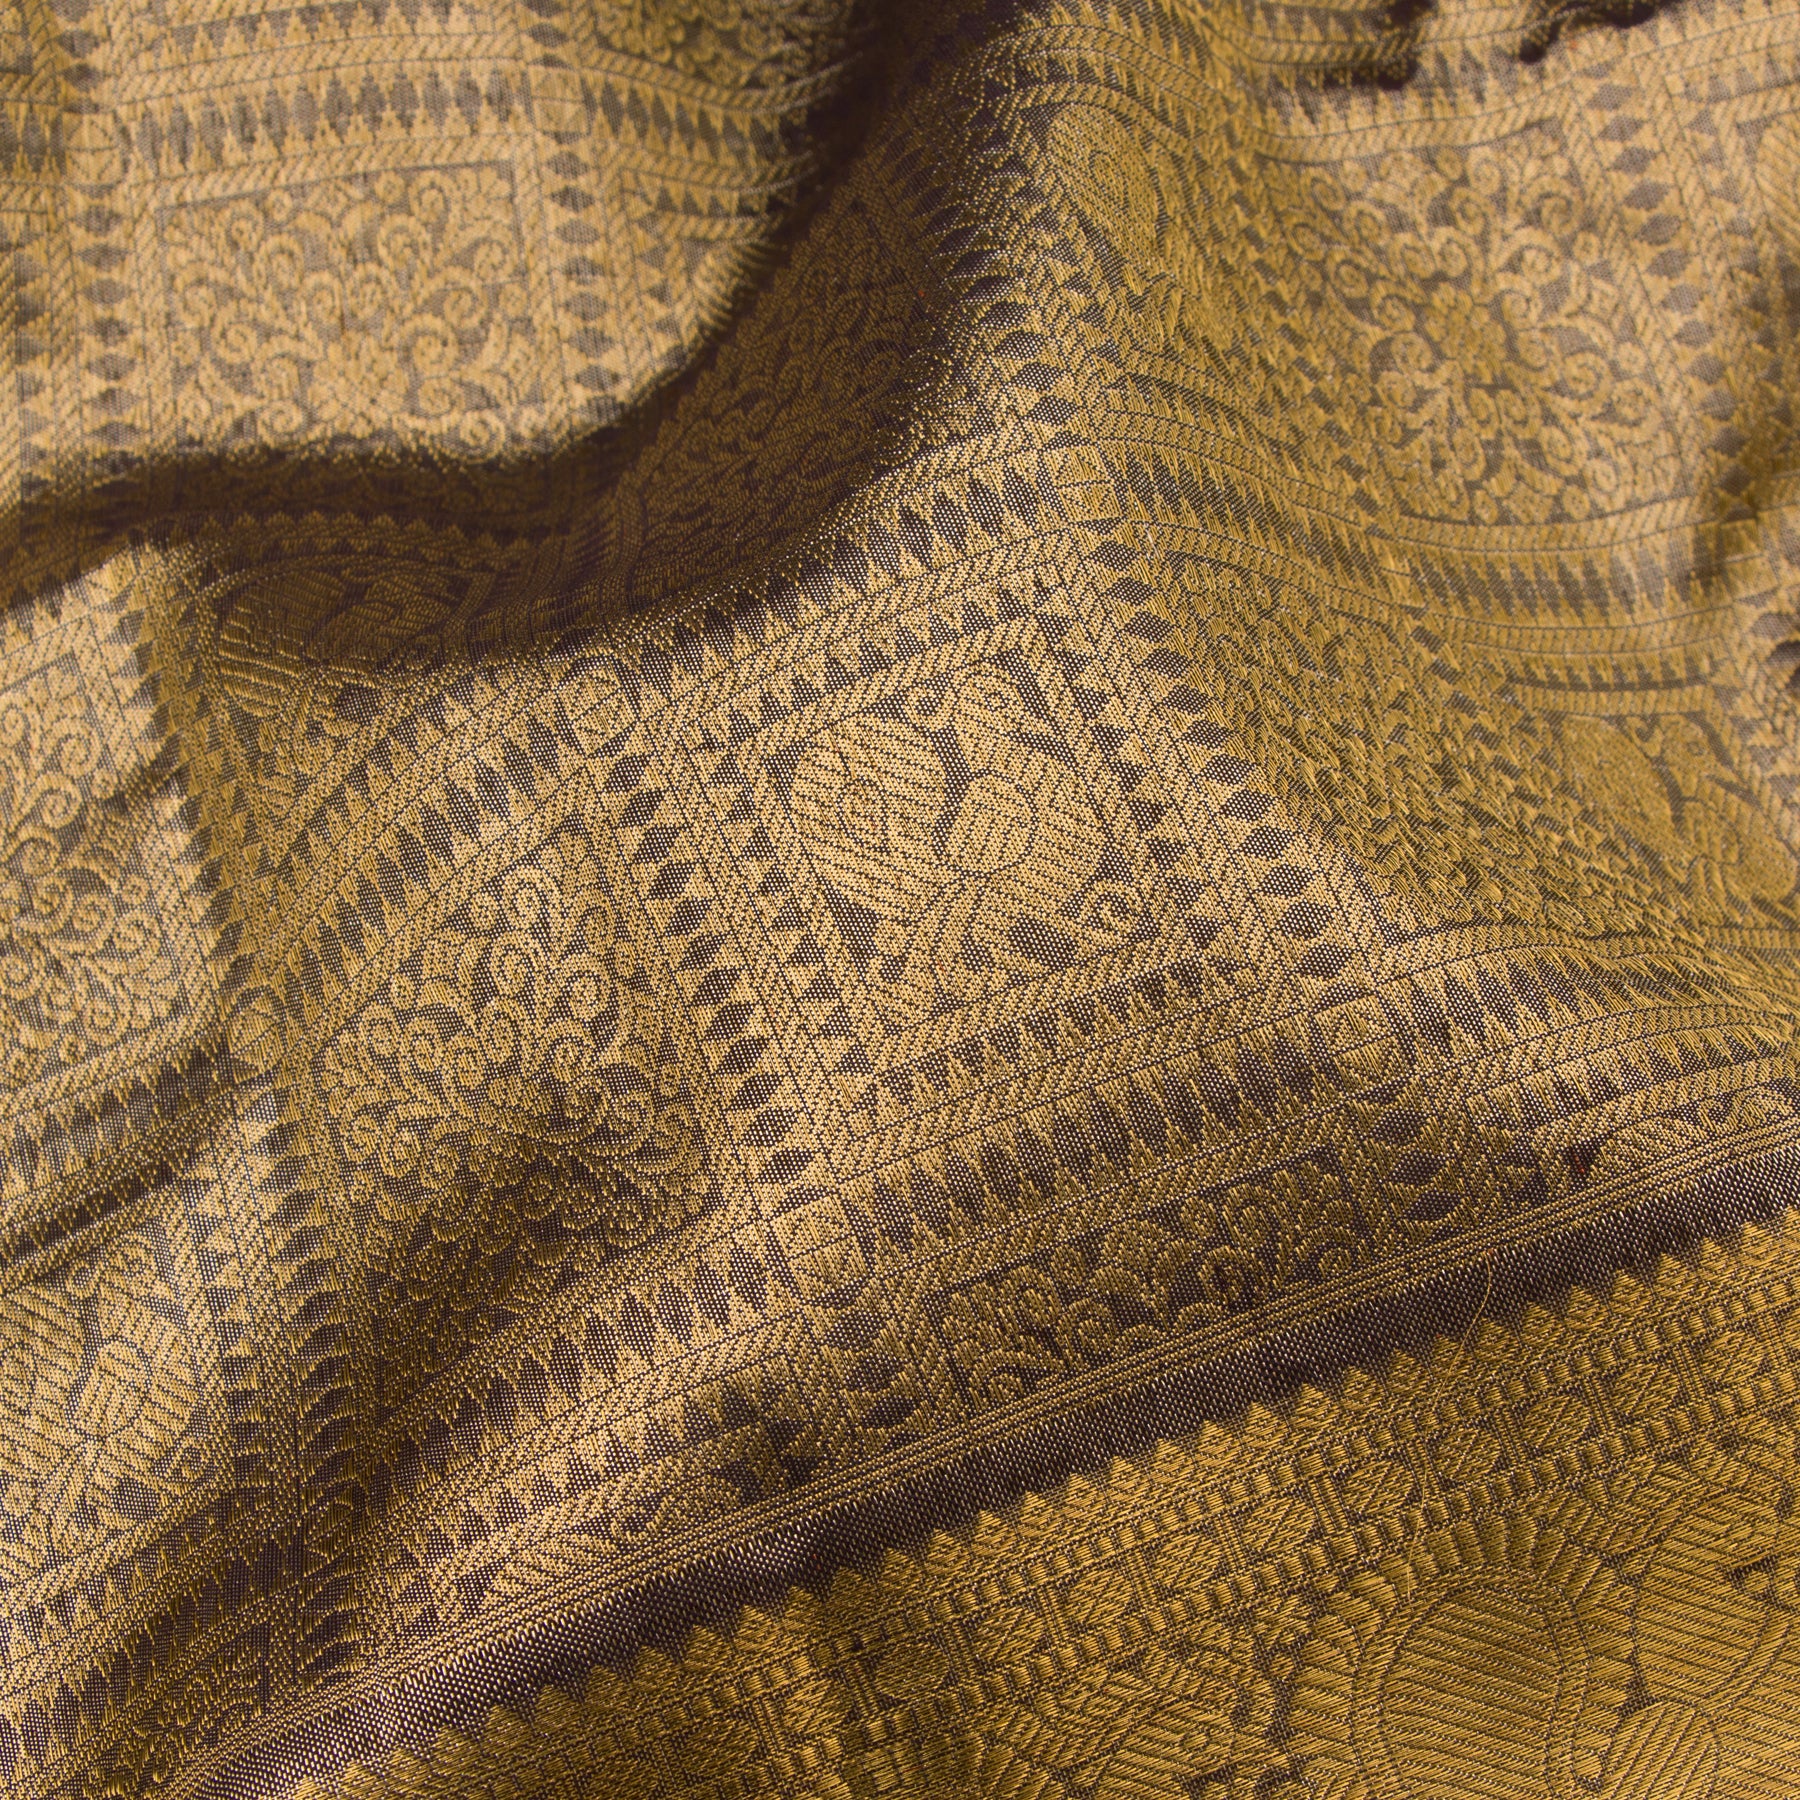 Kanakavalli Kanjivaram Silk Sari 23-110-HS001-02961 - Fabric View